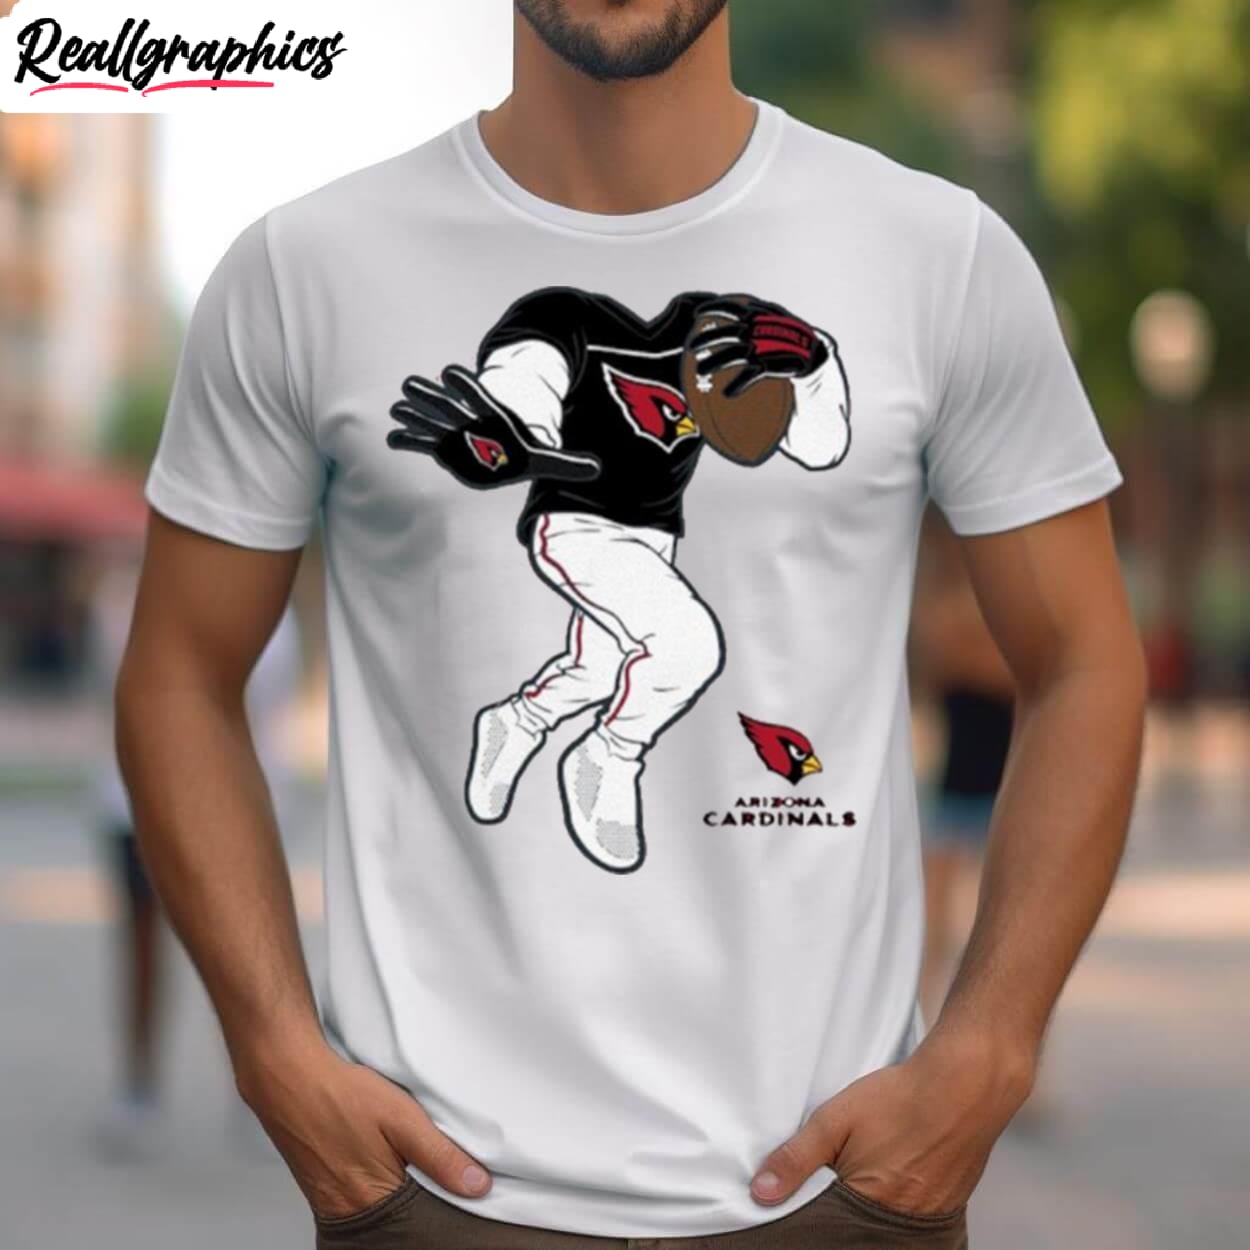 Arizona Cardinals Toddler Stiff Arm Shirt - Reallgraphics